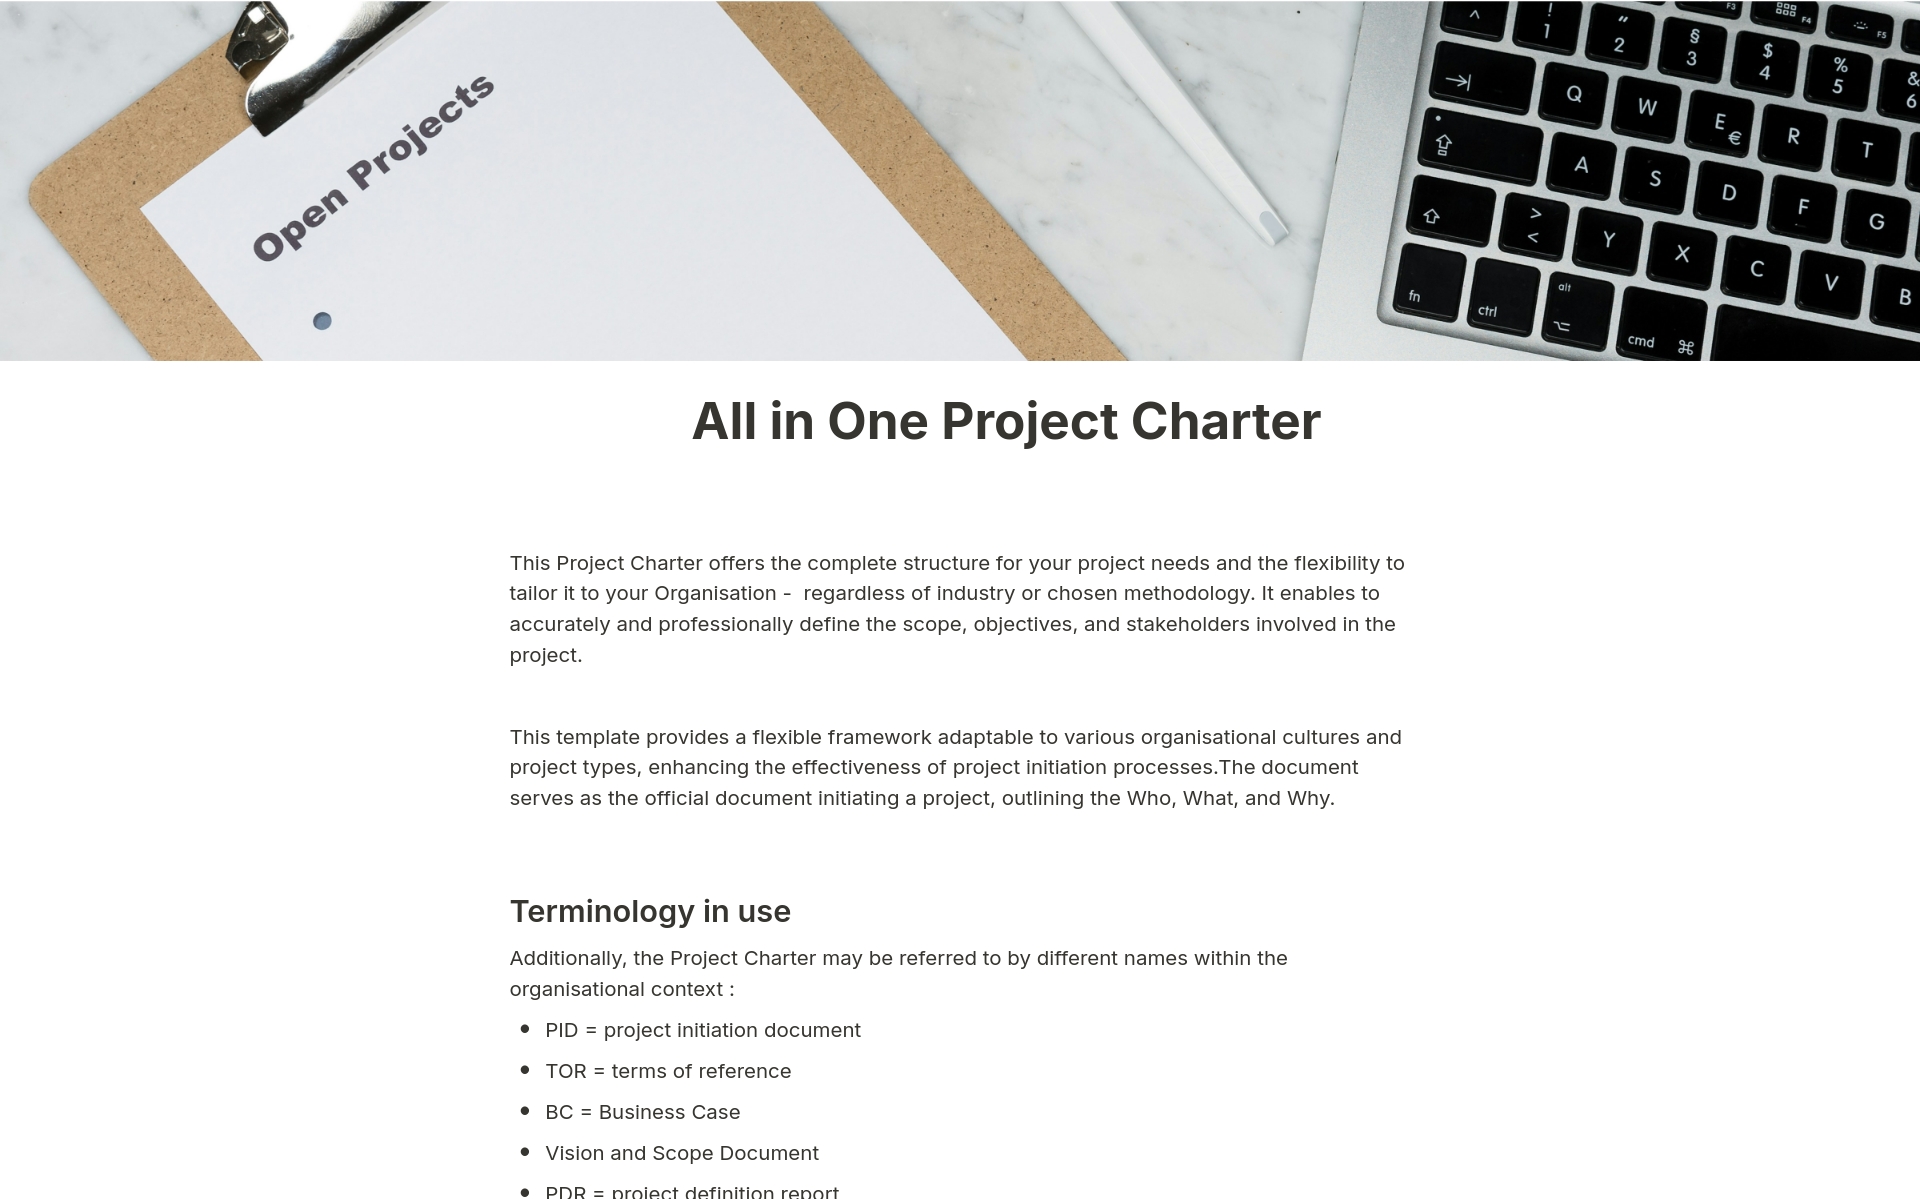 Uma prévia do modelo para All in One Project Charter